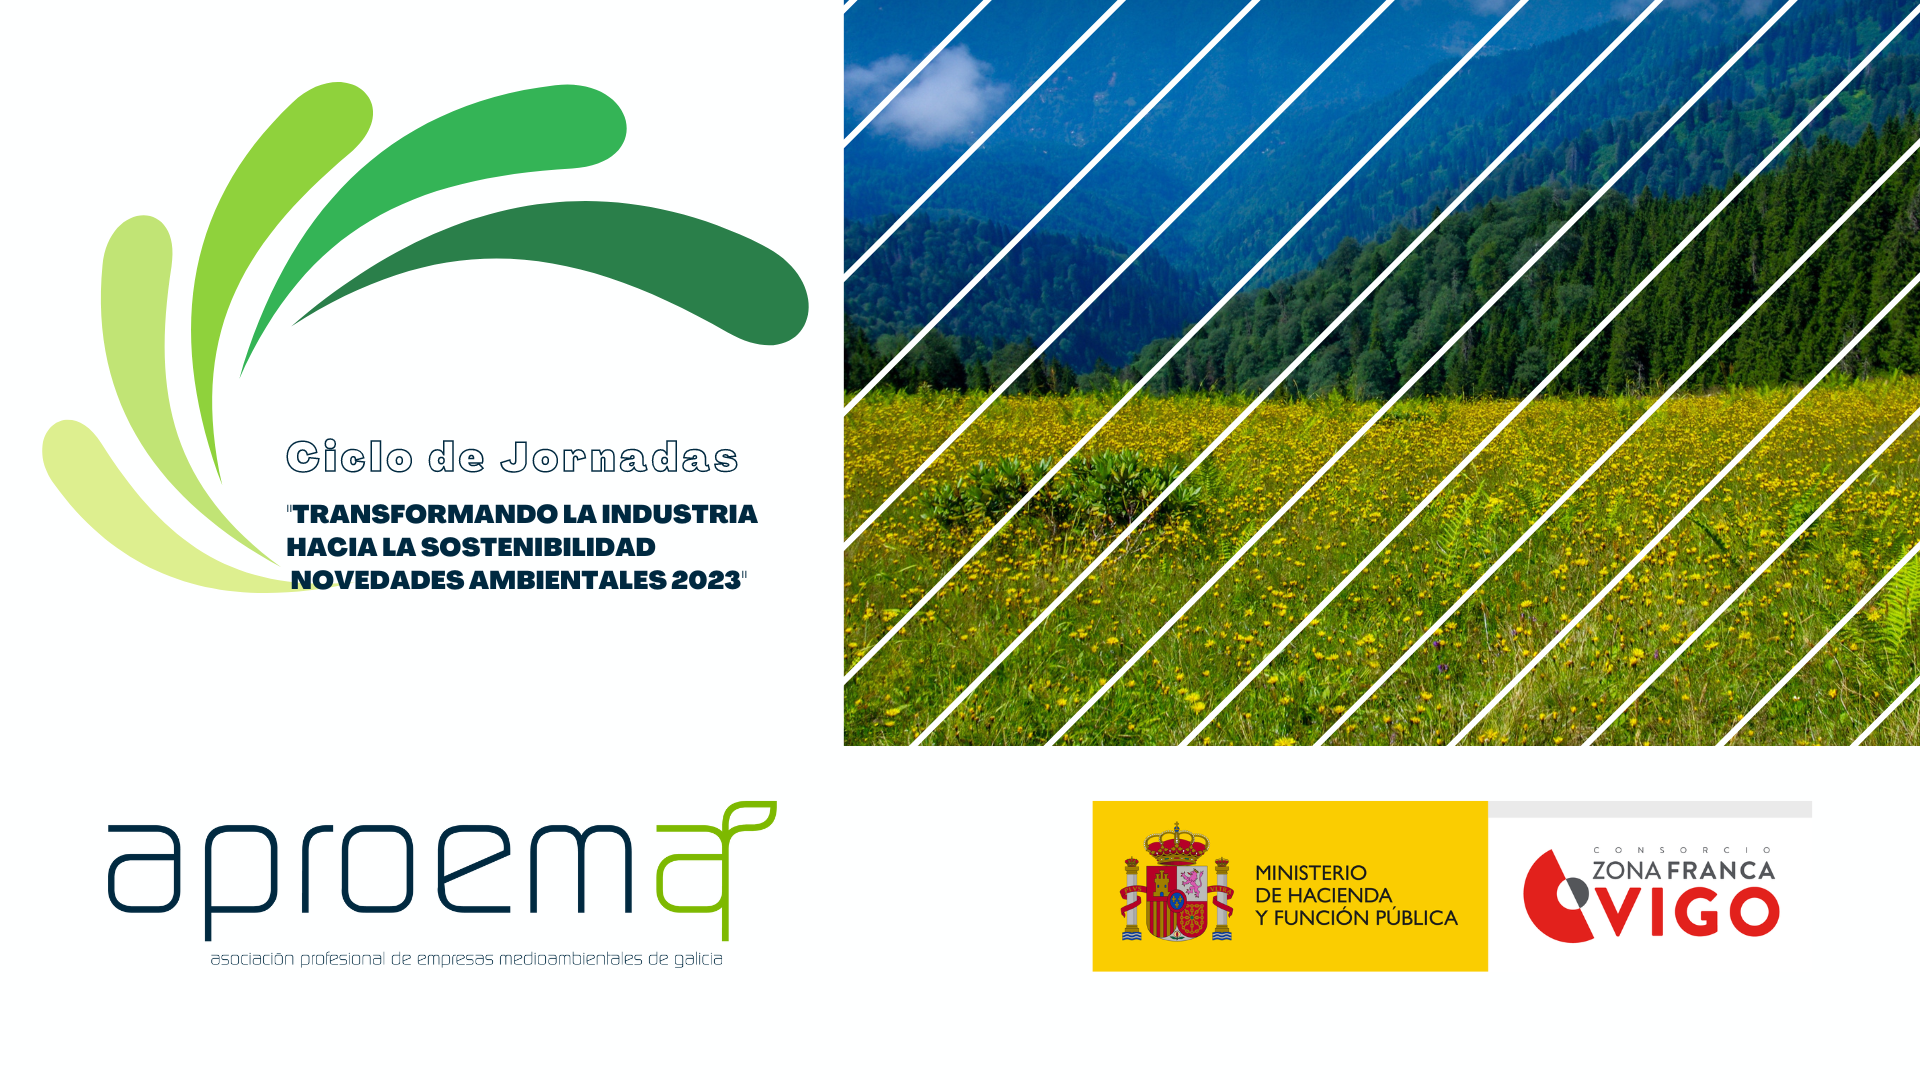 Renovación del acuerdo de colaboración entre Aproema y el Consorcio Zona Franca de Vigo para el Ciclo de Jornadas sobre sostenibilidad industrial: “Transformando la industria hacia la sostenibilidad: Novedades Ambientales 2023”